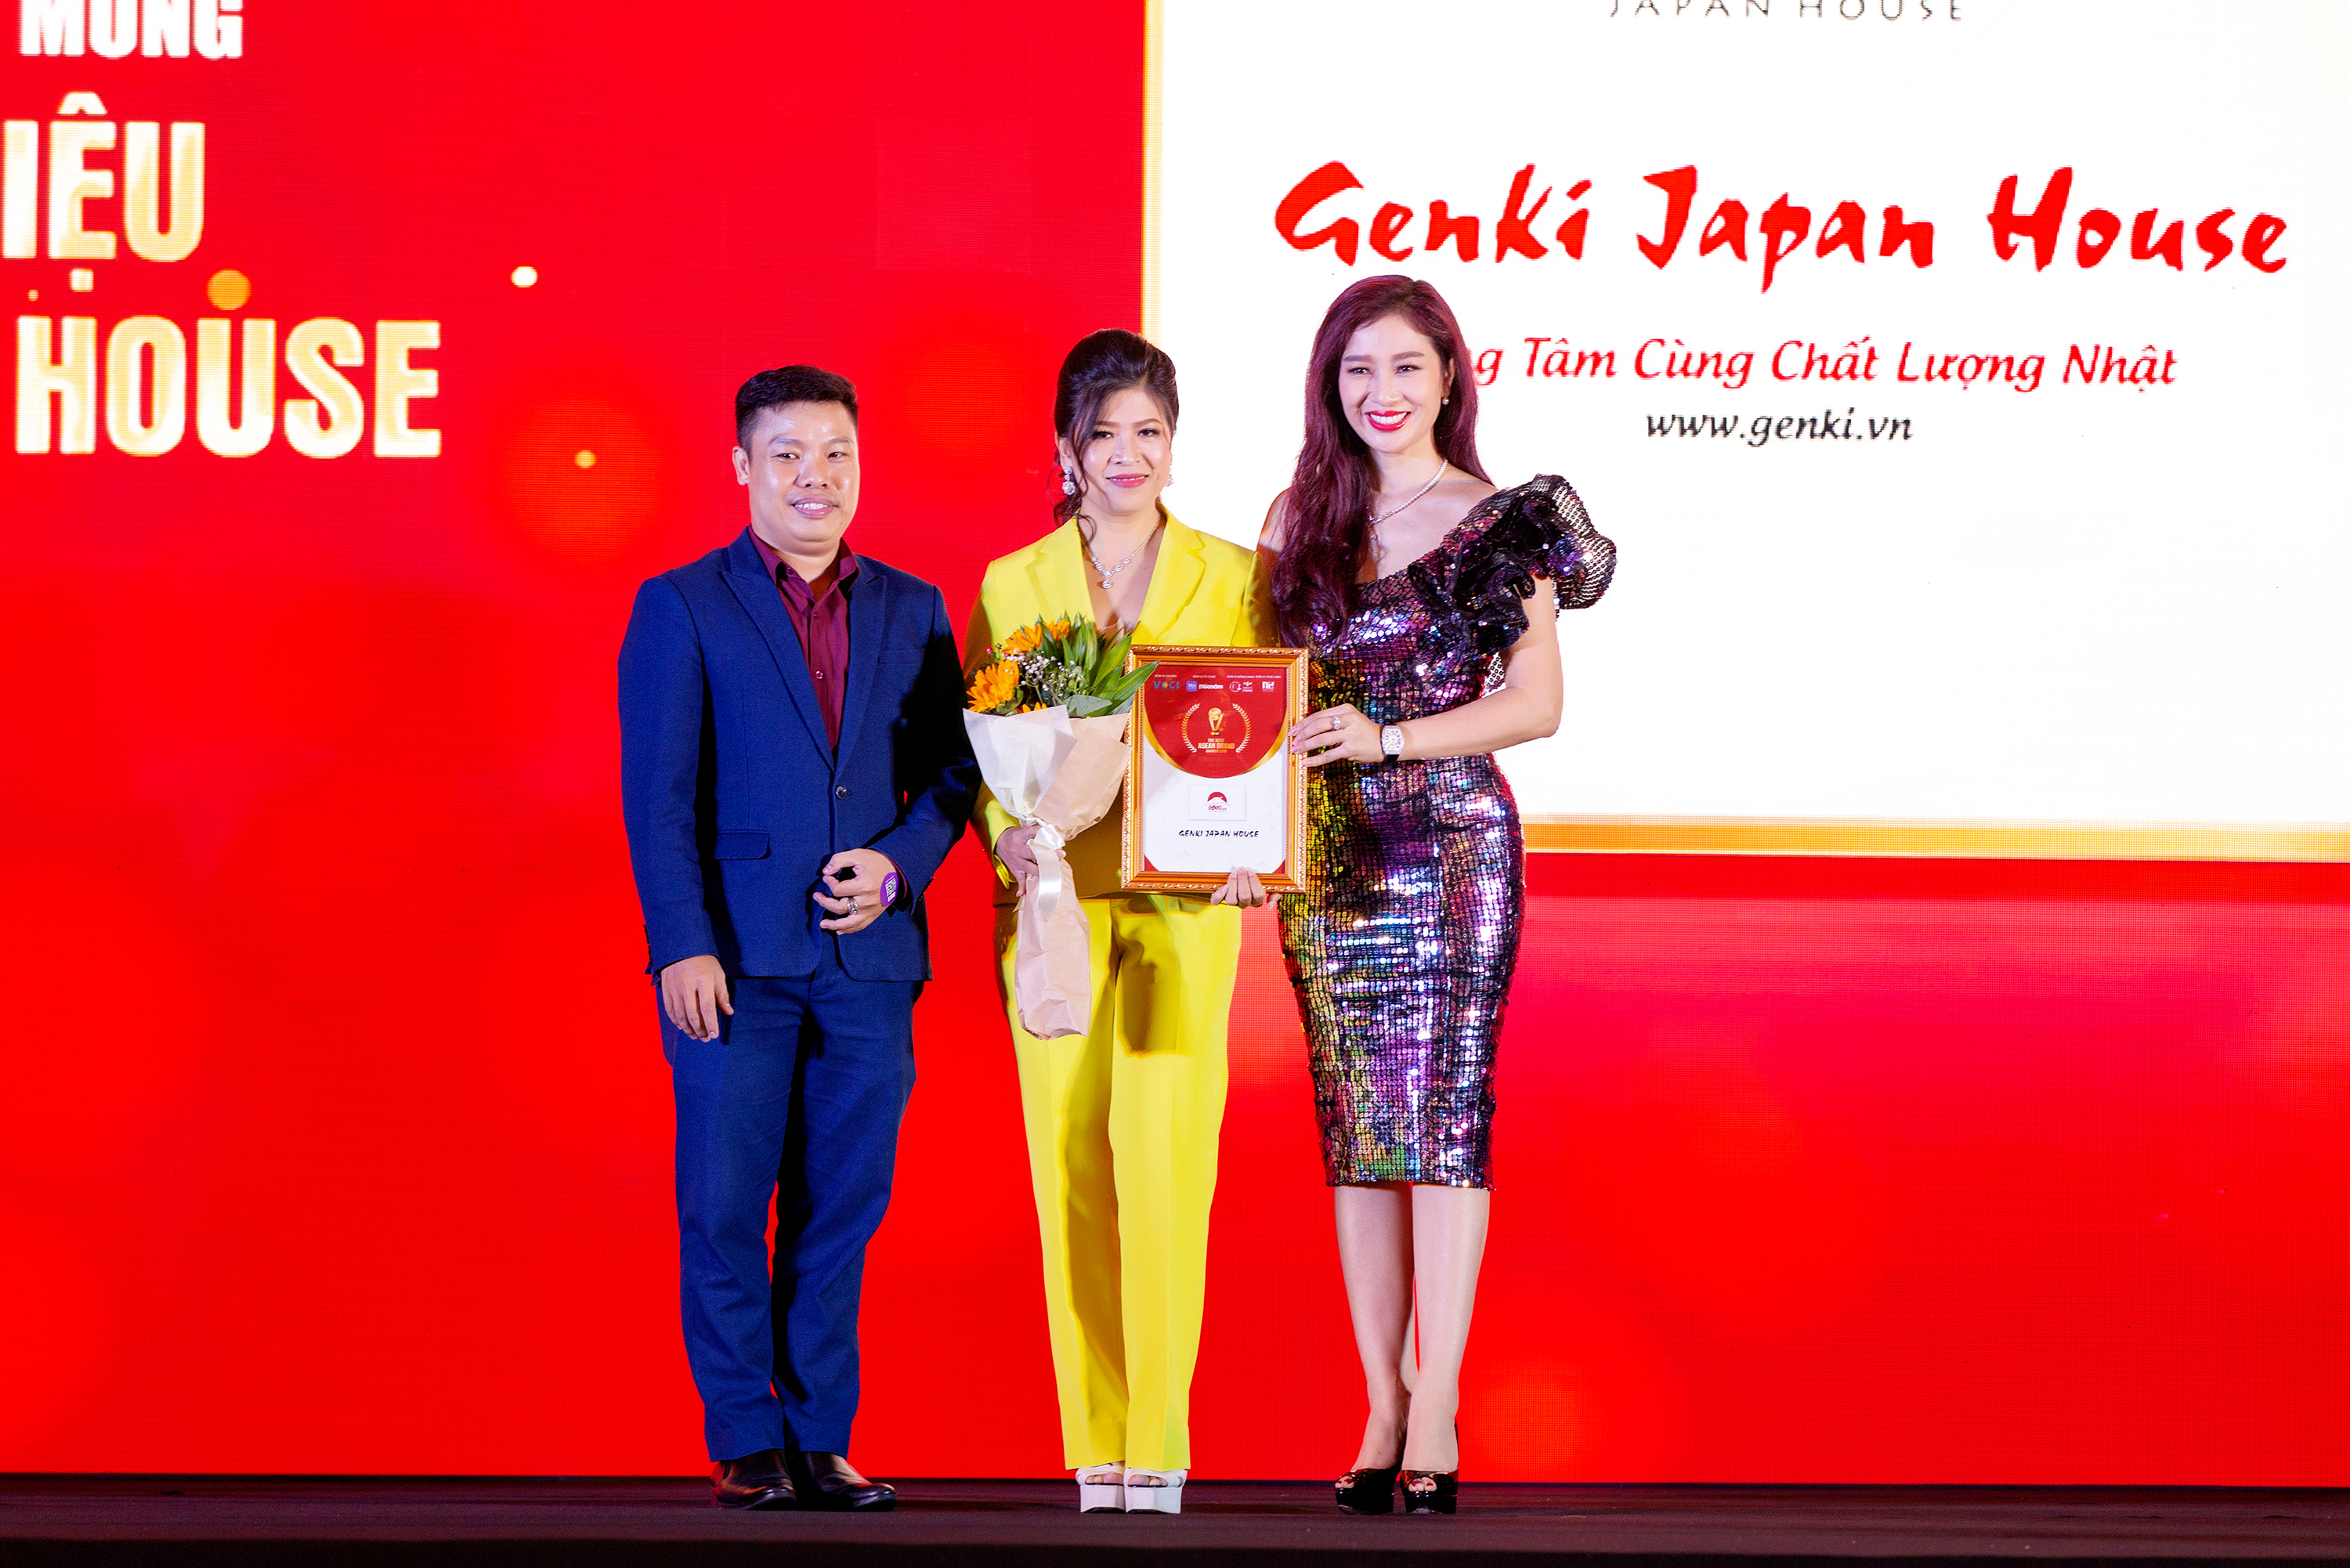 Thực phẩm chất lượng Nhật - Genki Japan House nhận giải thưởng The Best Asean Brand Awards 2019